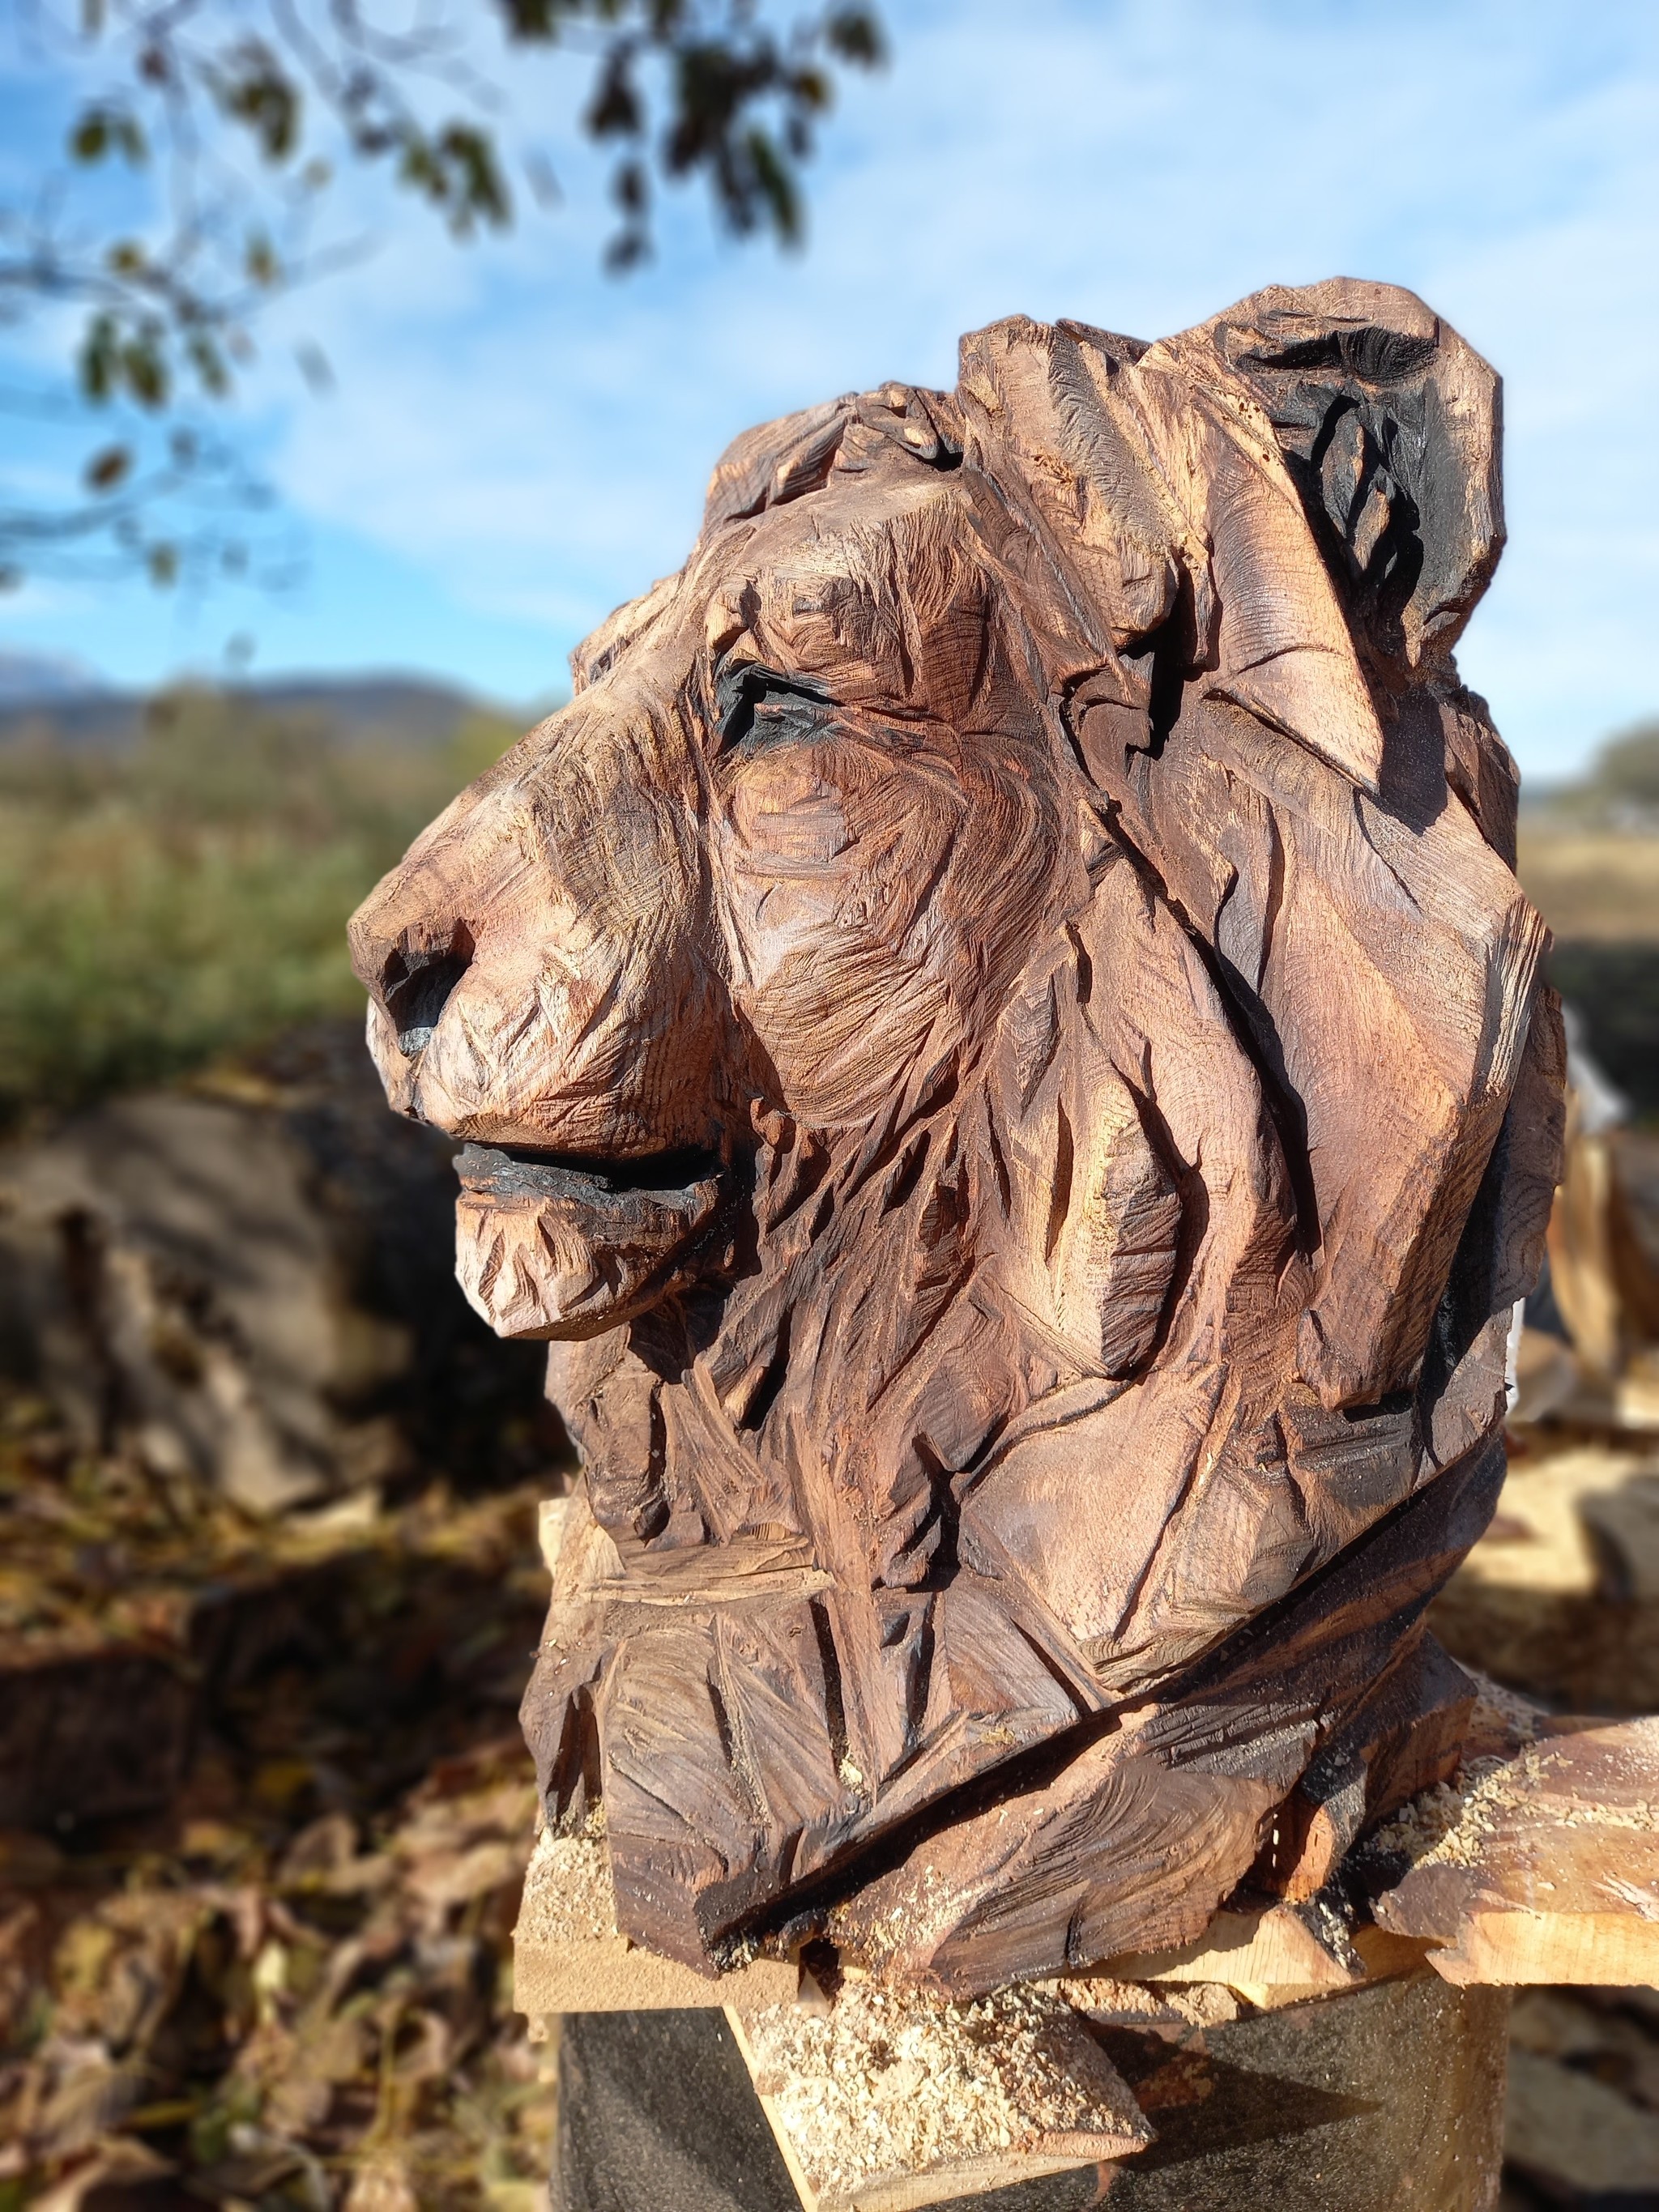 Скульптурная резьба по дереву- увлекательное хобби, помогающее создавать красивые сувенирные работы